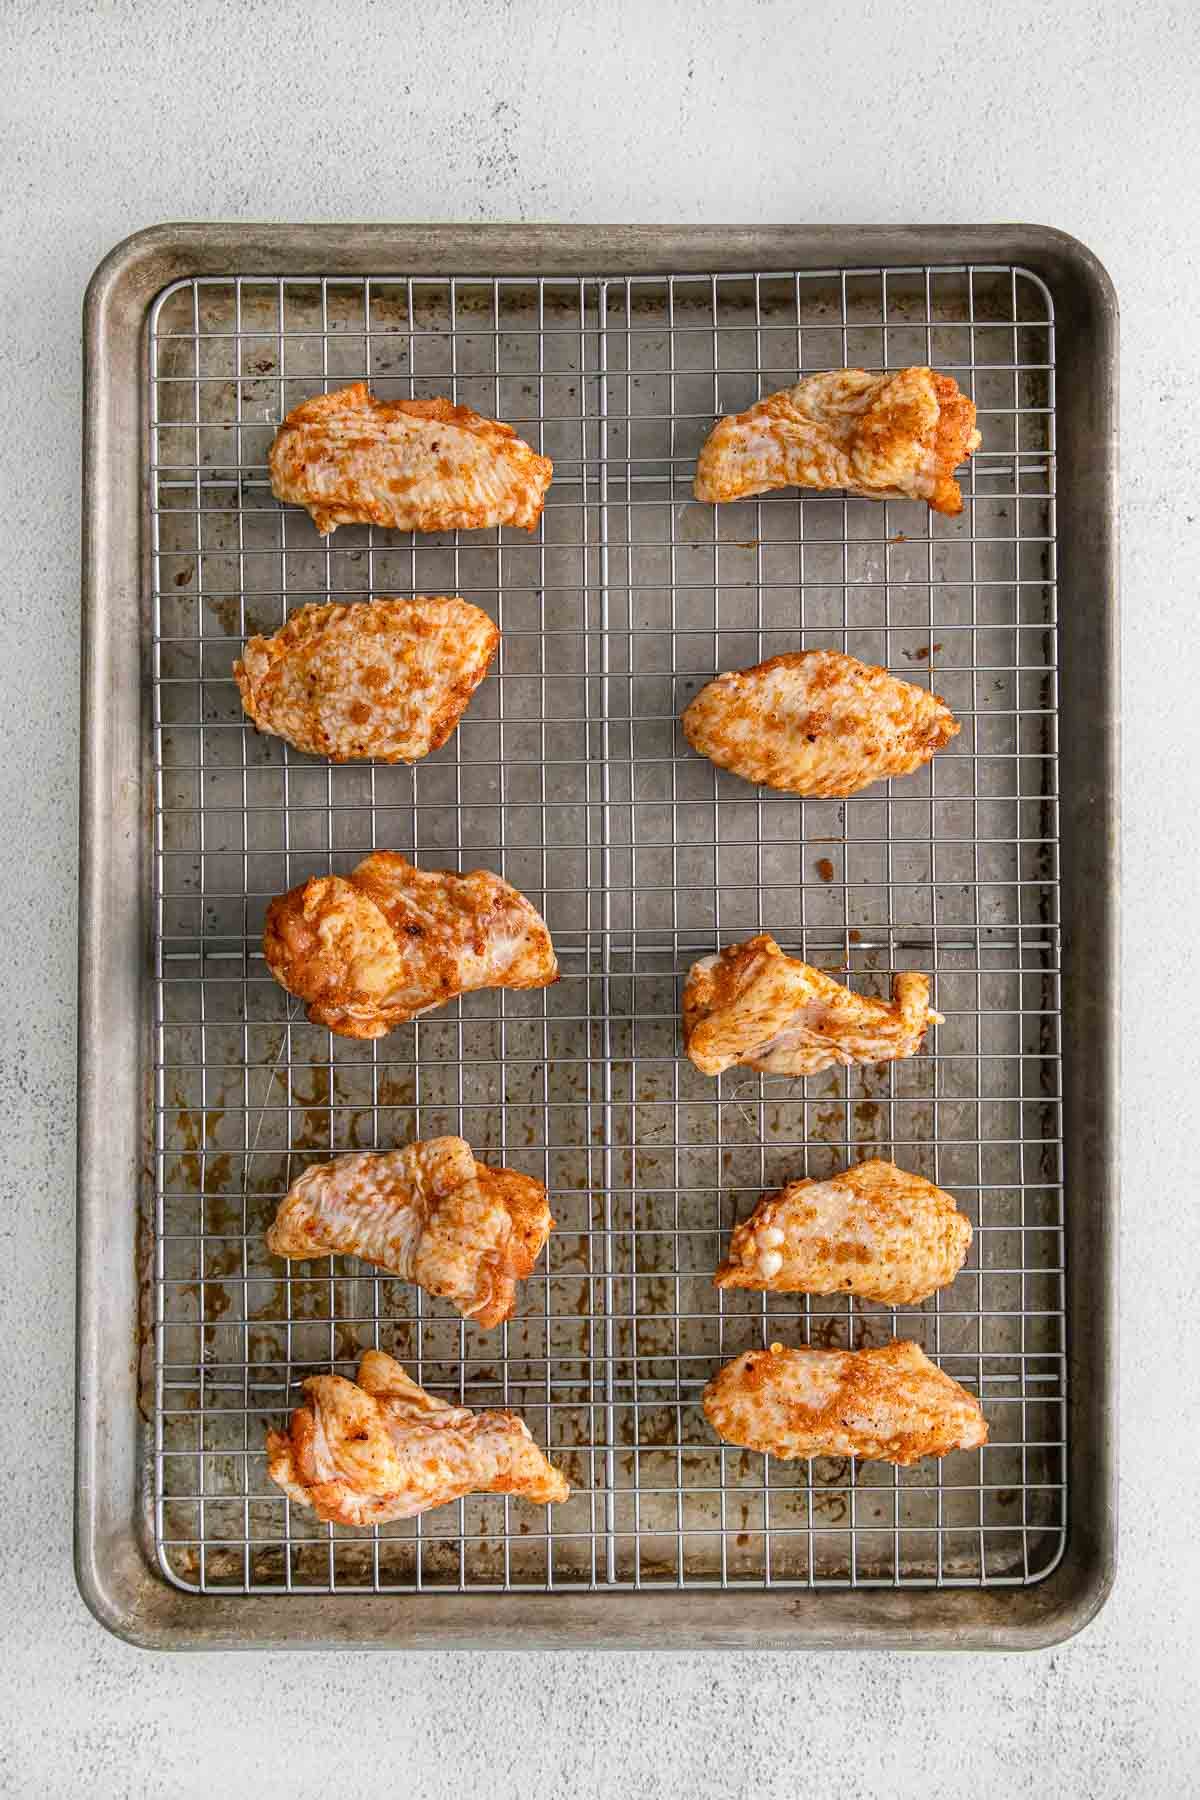 ten raw chicken wings on a wire rack in a baking sheet.